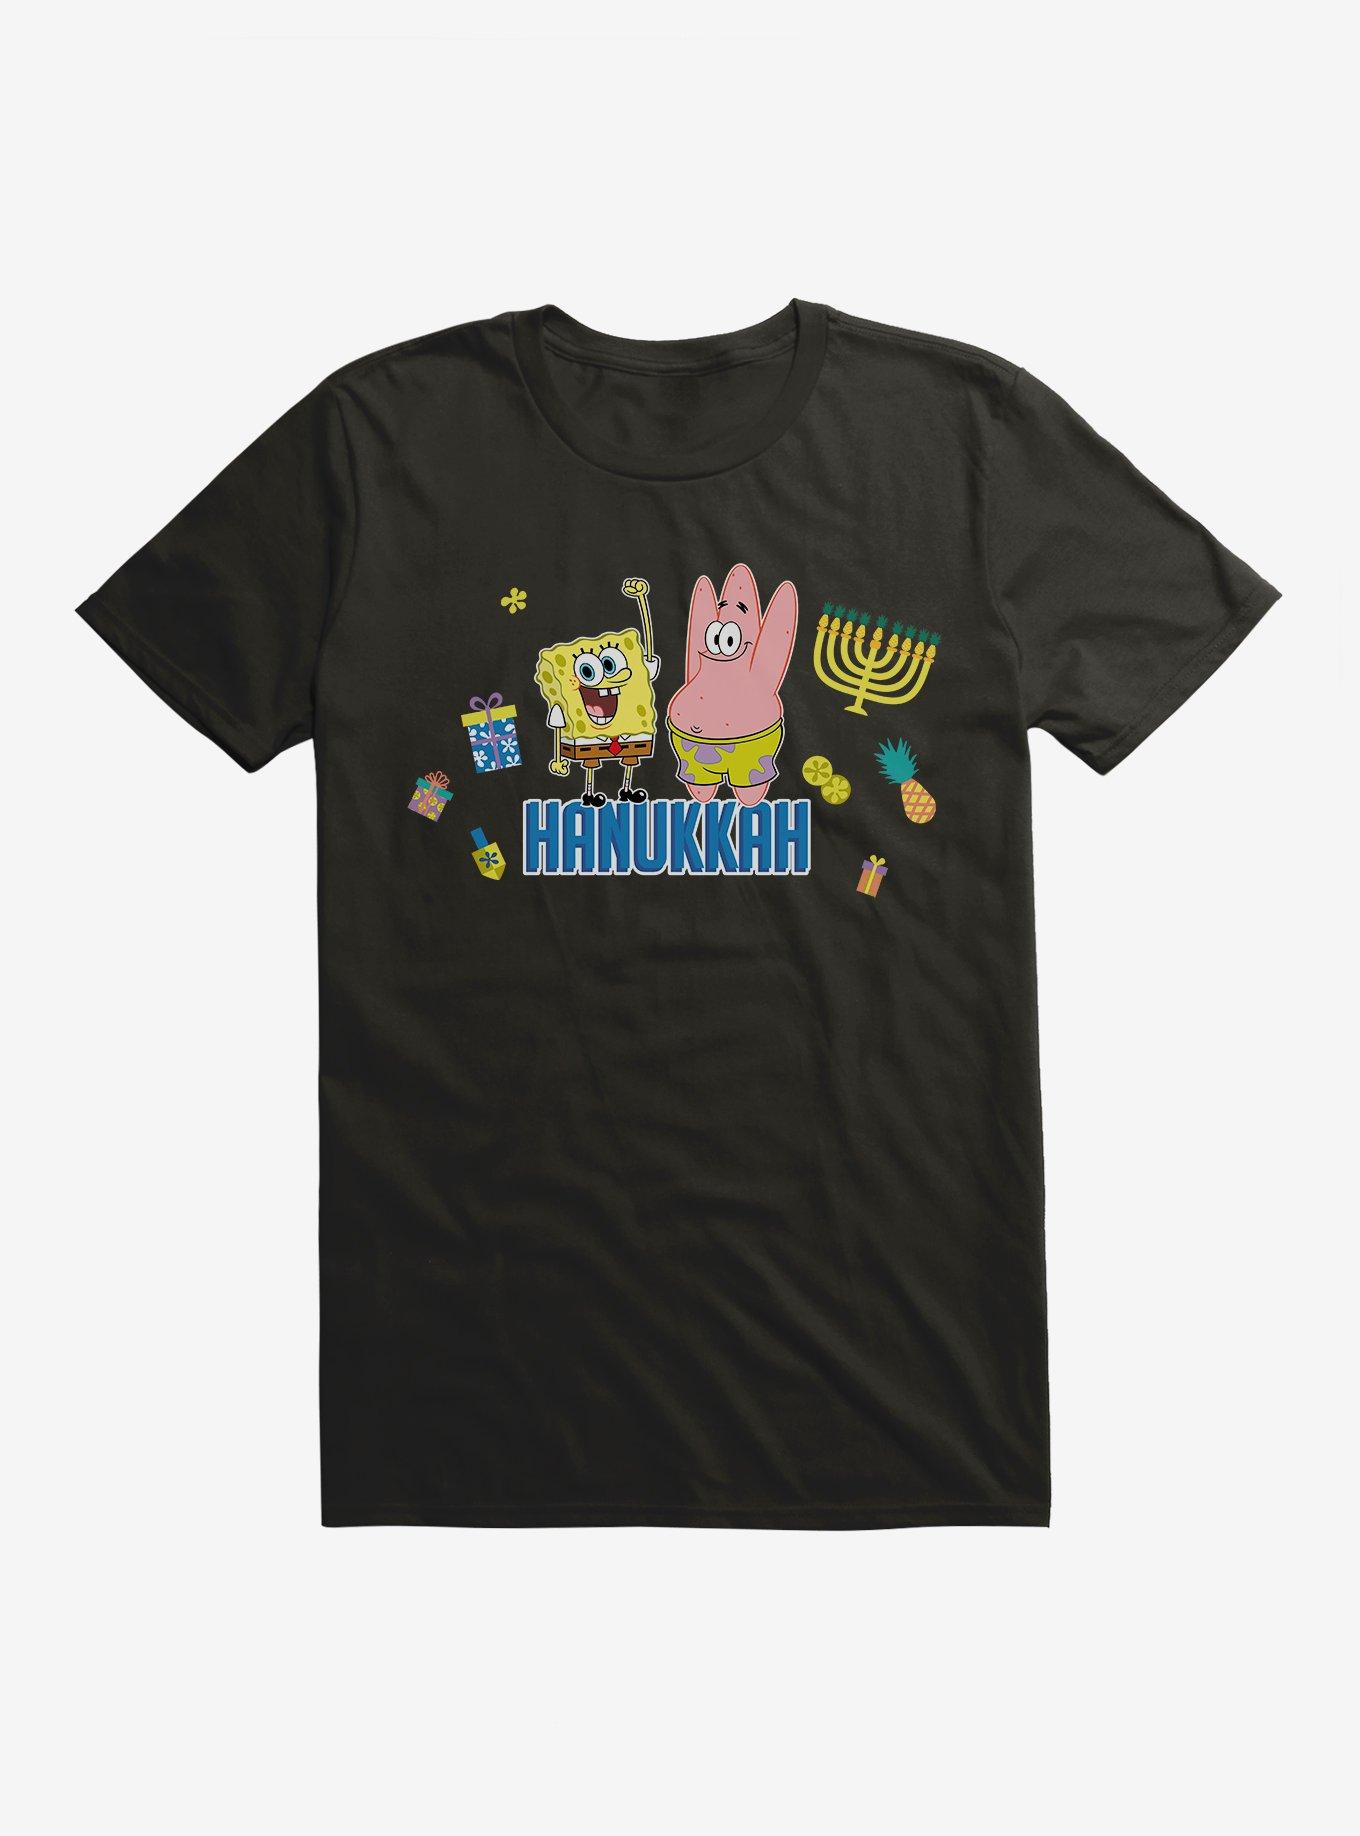 SpongeBob SquarePants Hanukkah T-Shirt